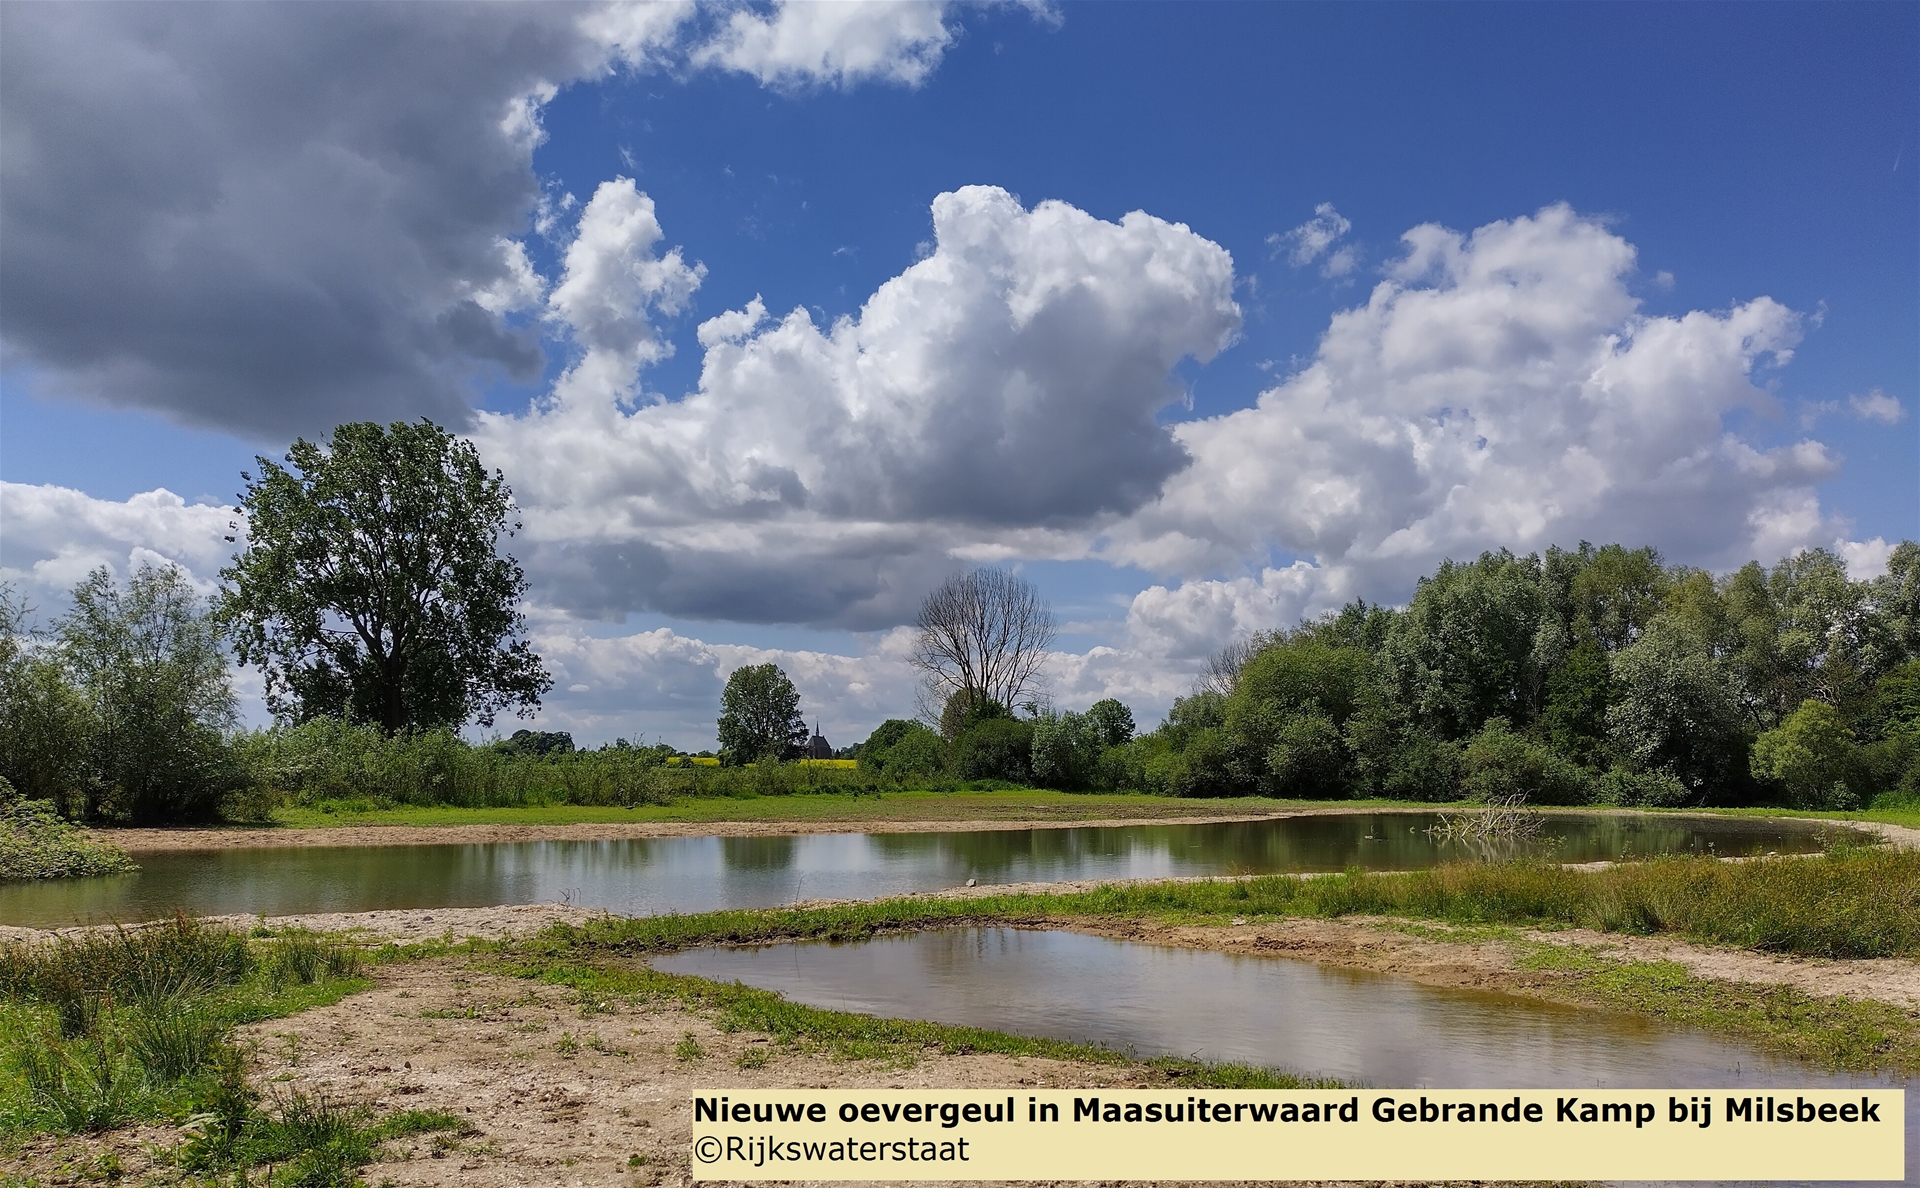 De nieuwe oevergeul in Maasuiterwaard Gebrande Kamp bij Milsbeek met wolken en een blauwe lucht erboven. 